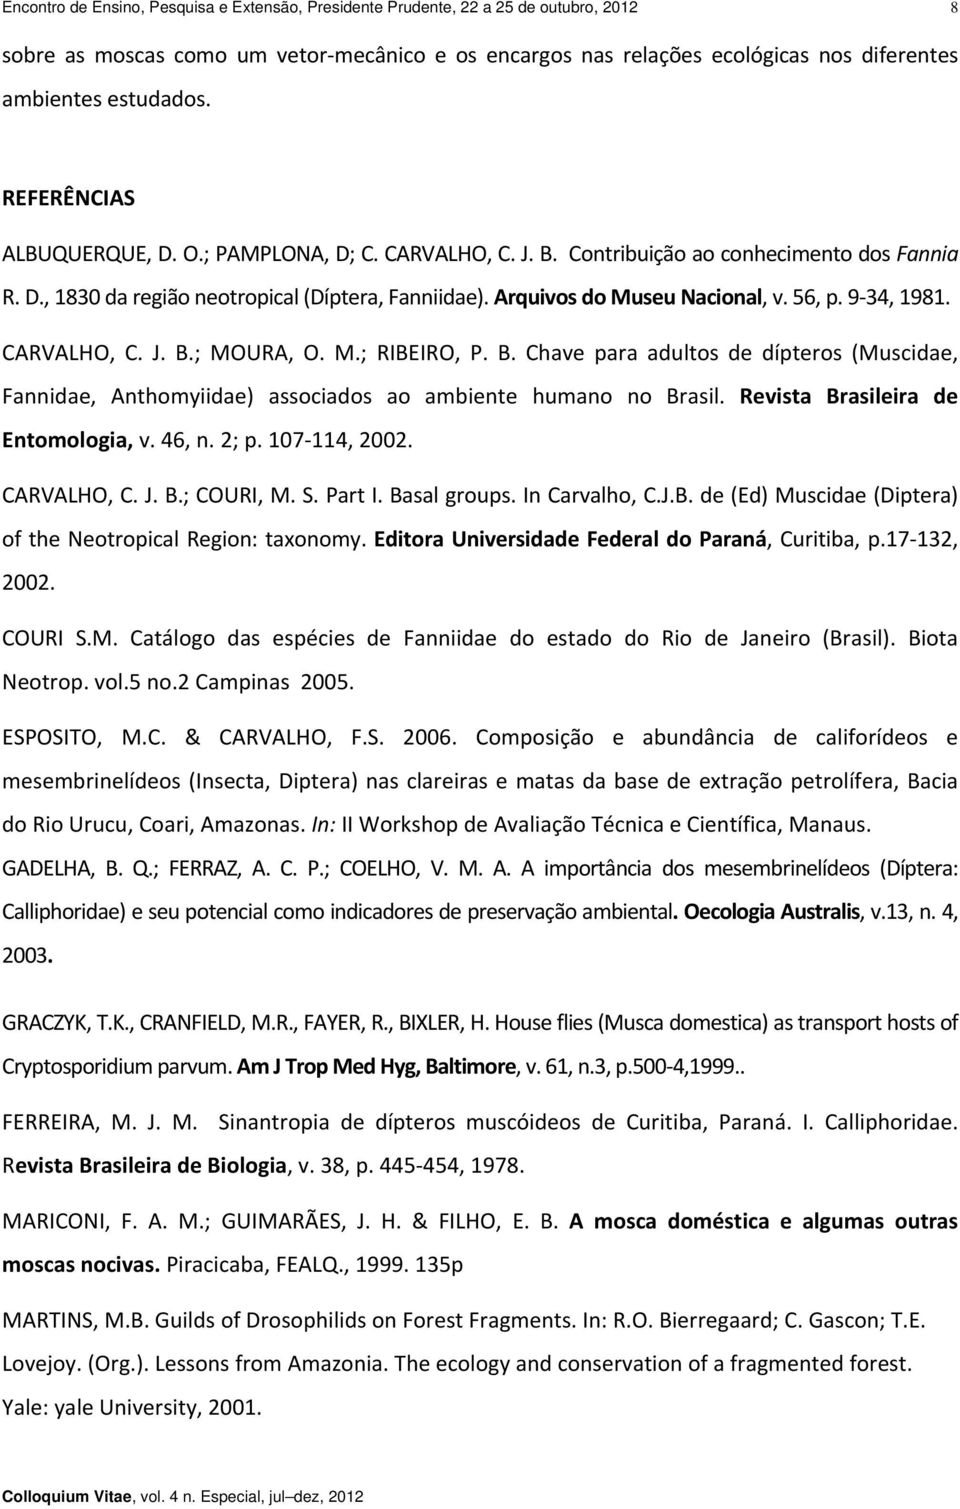 Arquivos do Museu Nacional, v. 56, p. 9 34, 1981. CARVALHO, C. J. B.; MOURA, O. M.; RIBEIRO, P. B. Chave para adultos de dípteros (Muscidae, Fannidae, Anthomyiidae) associados ao ambiente humano no Brasil.